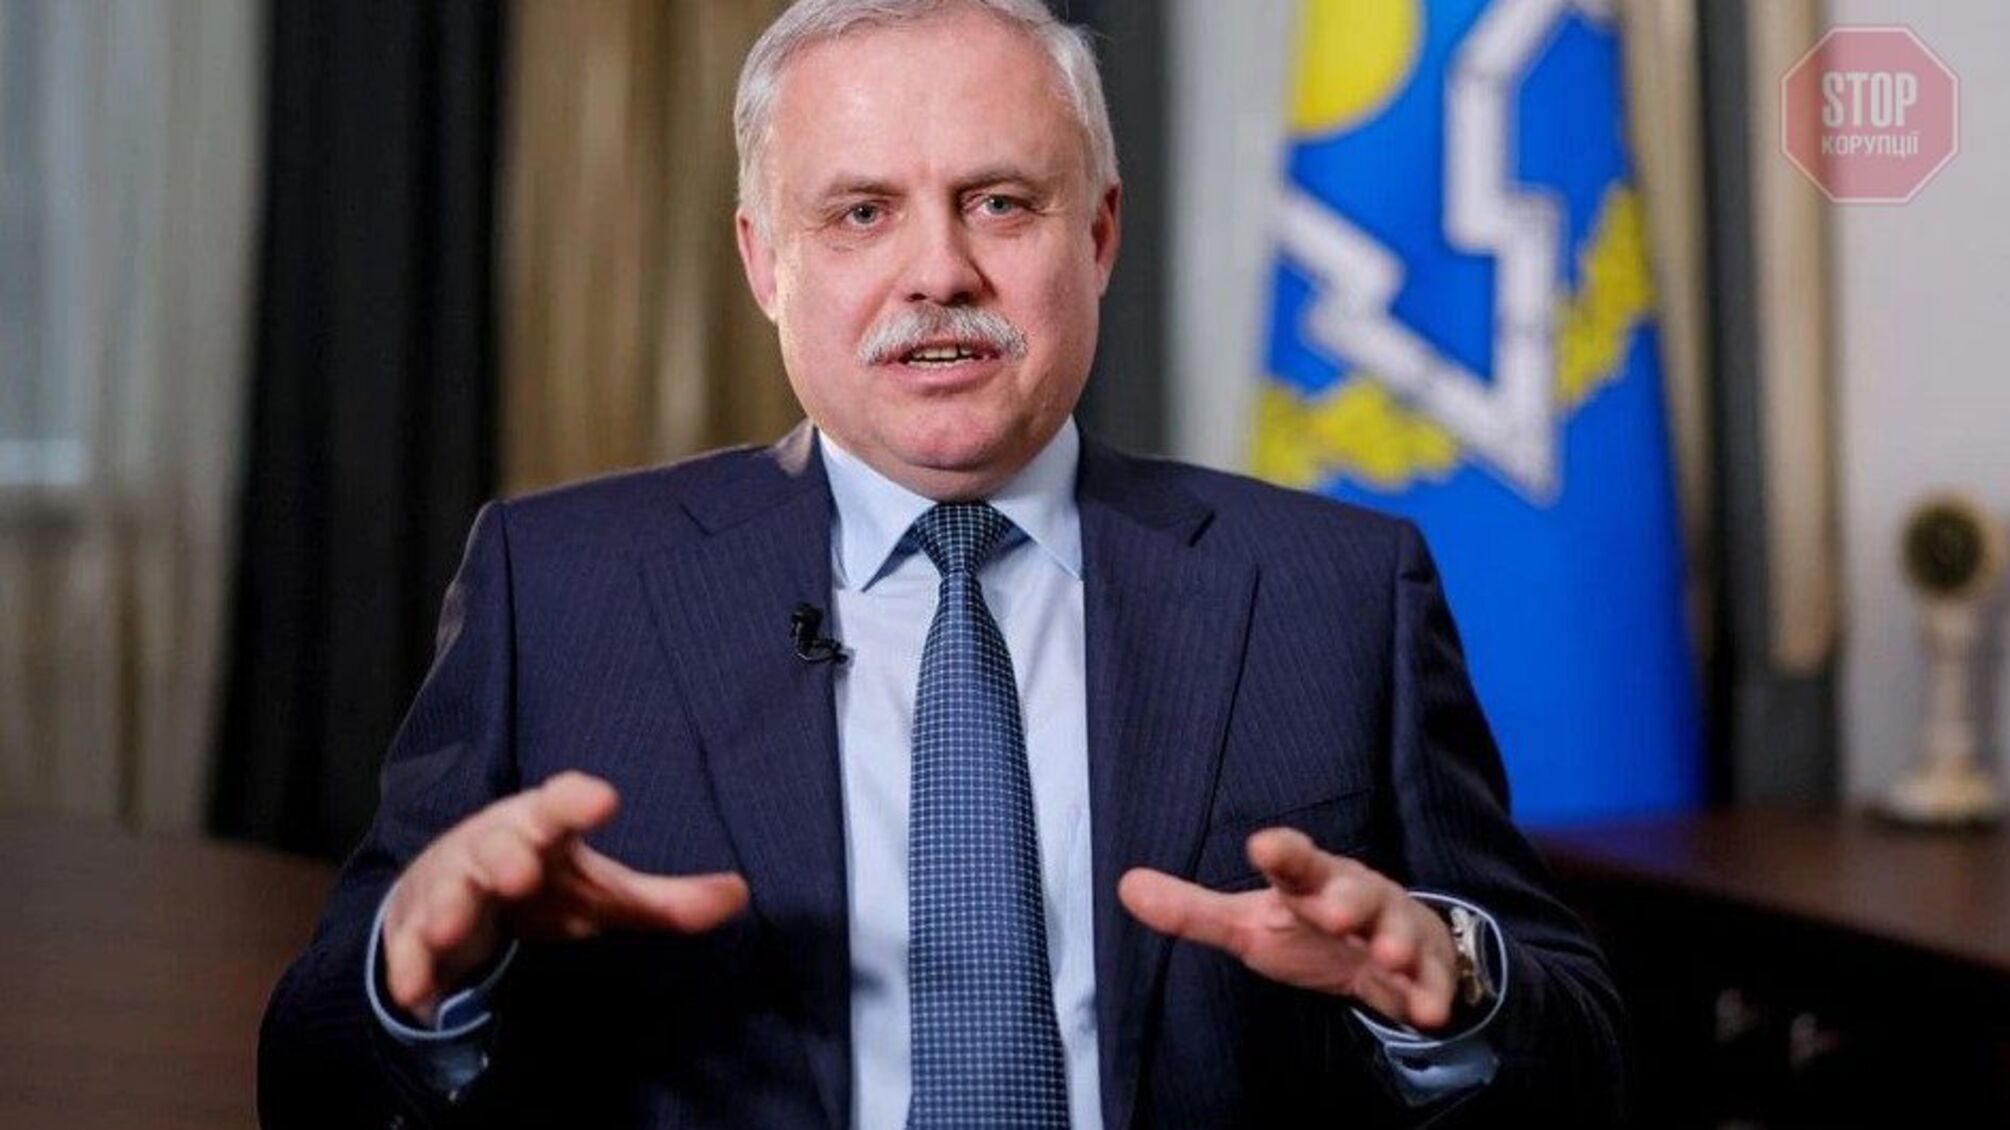 Глава ОДКБ: в Украину можно отправить войска, как в Казахстан